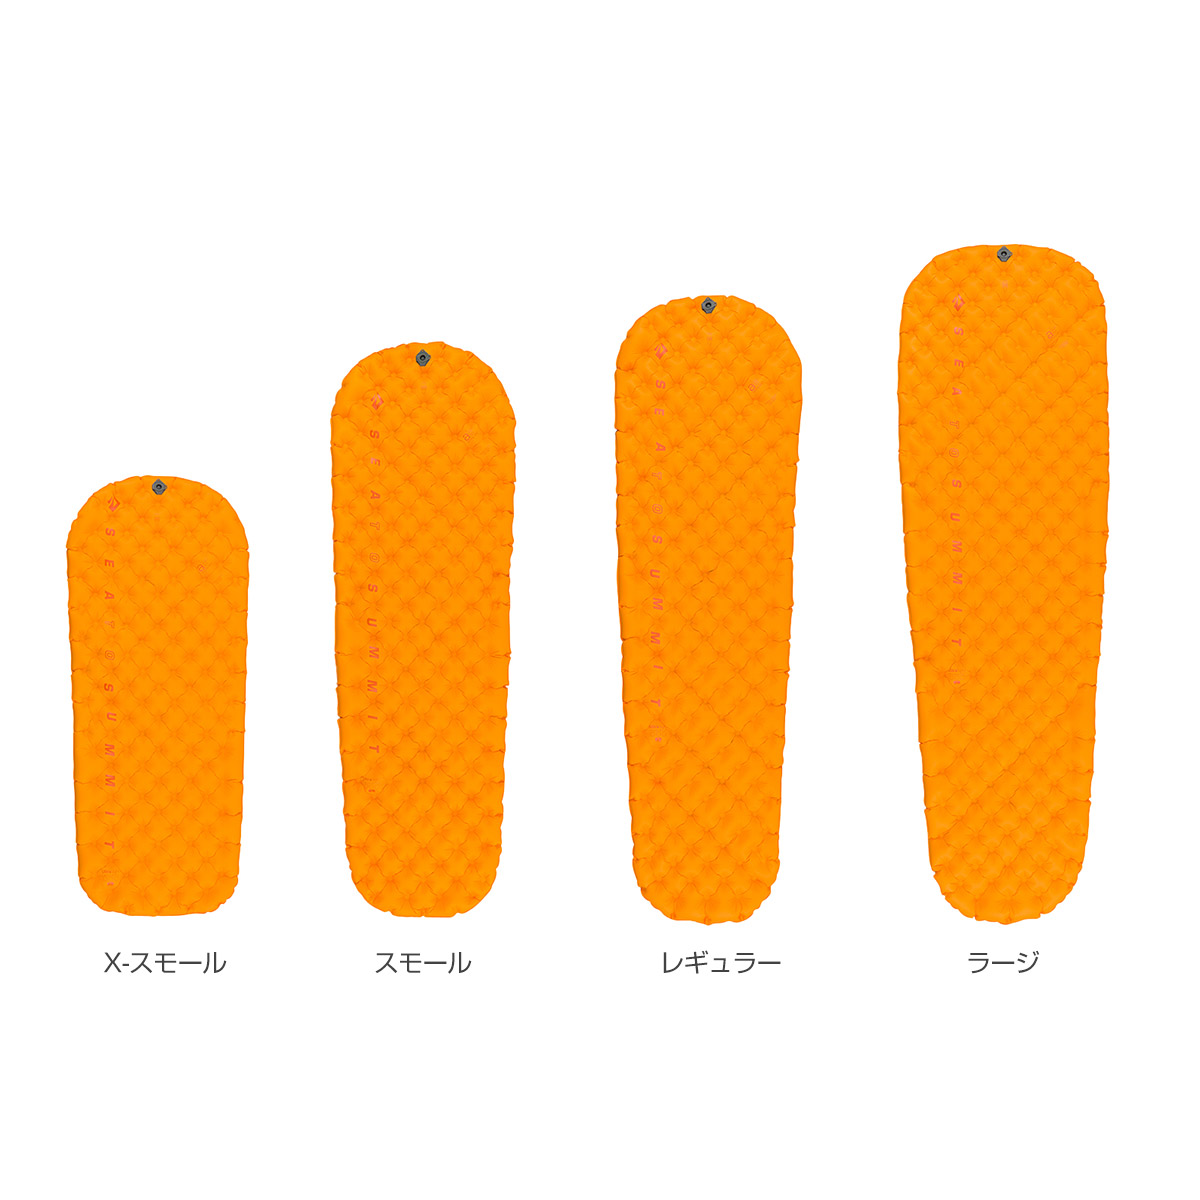 ウルトラライト インサレーティッドマット(X-スモール オレンジ): シートゥサミット | ロストアローオンラインストア